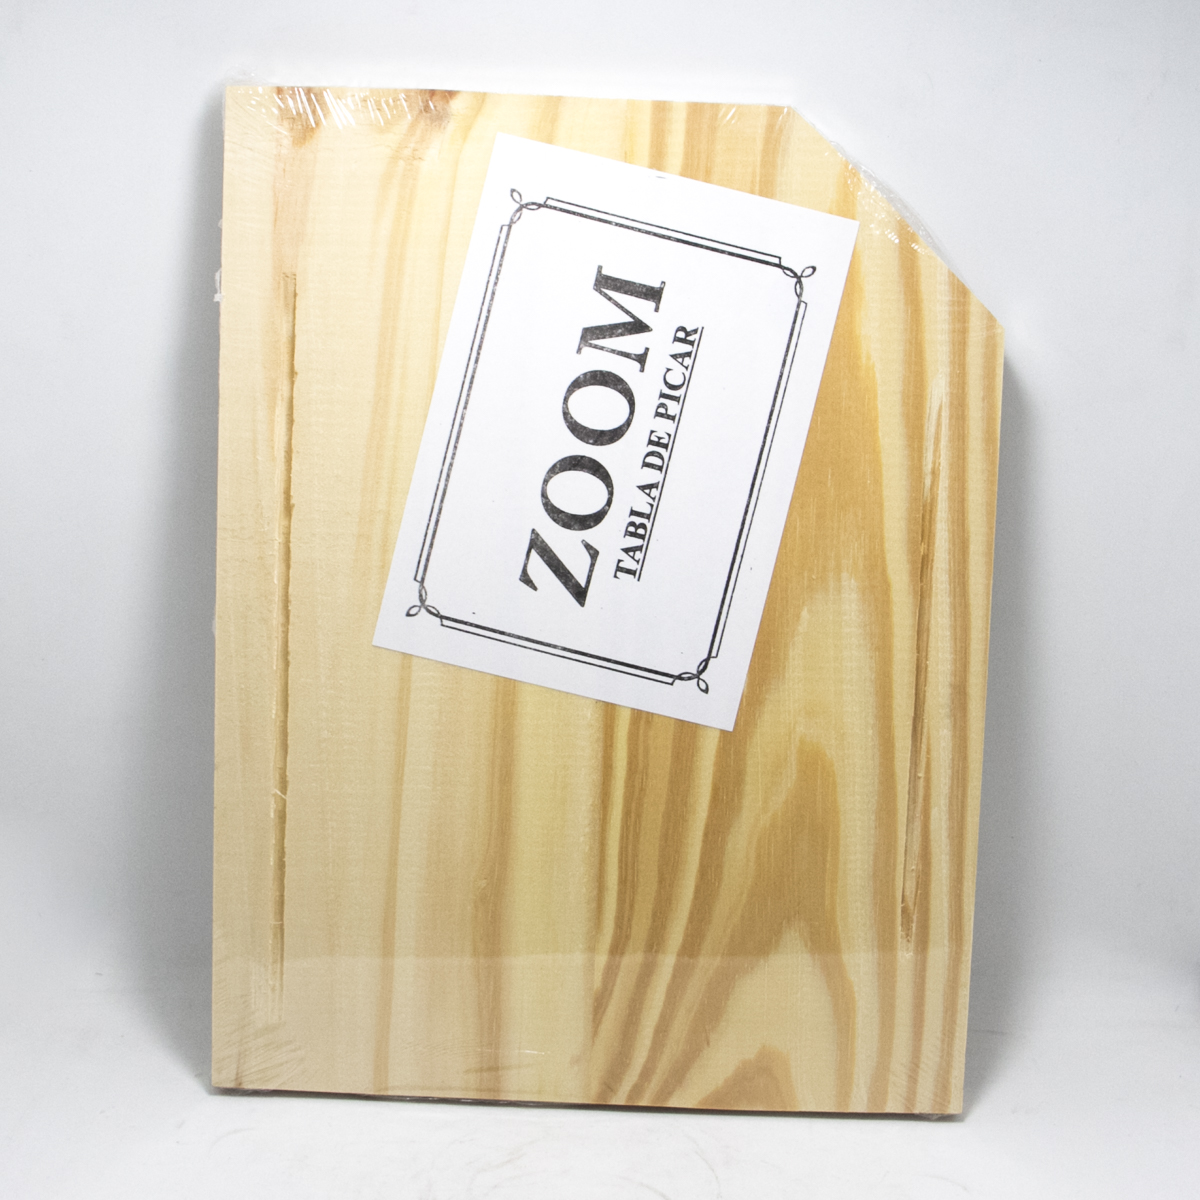 Tabla zoom - madera - 30x22,5cm